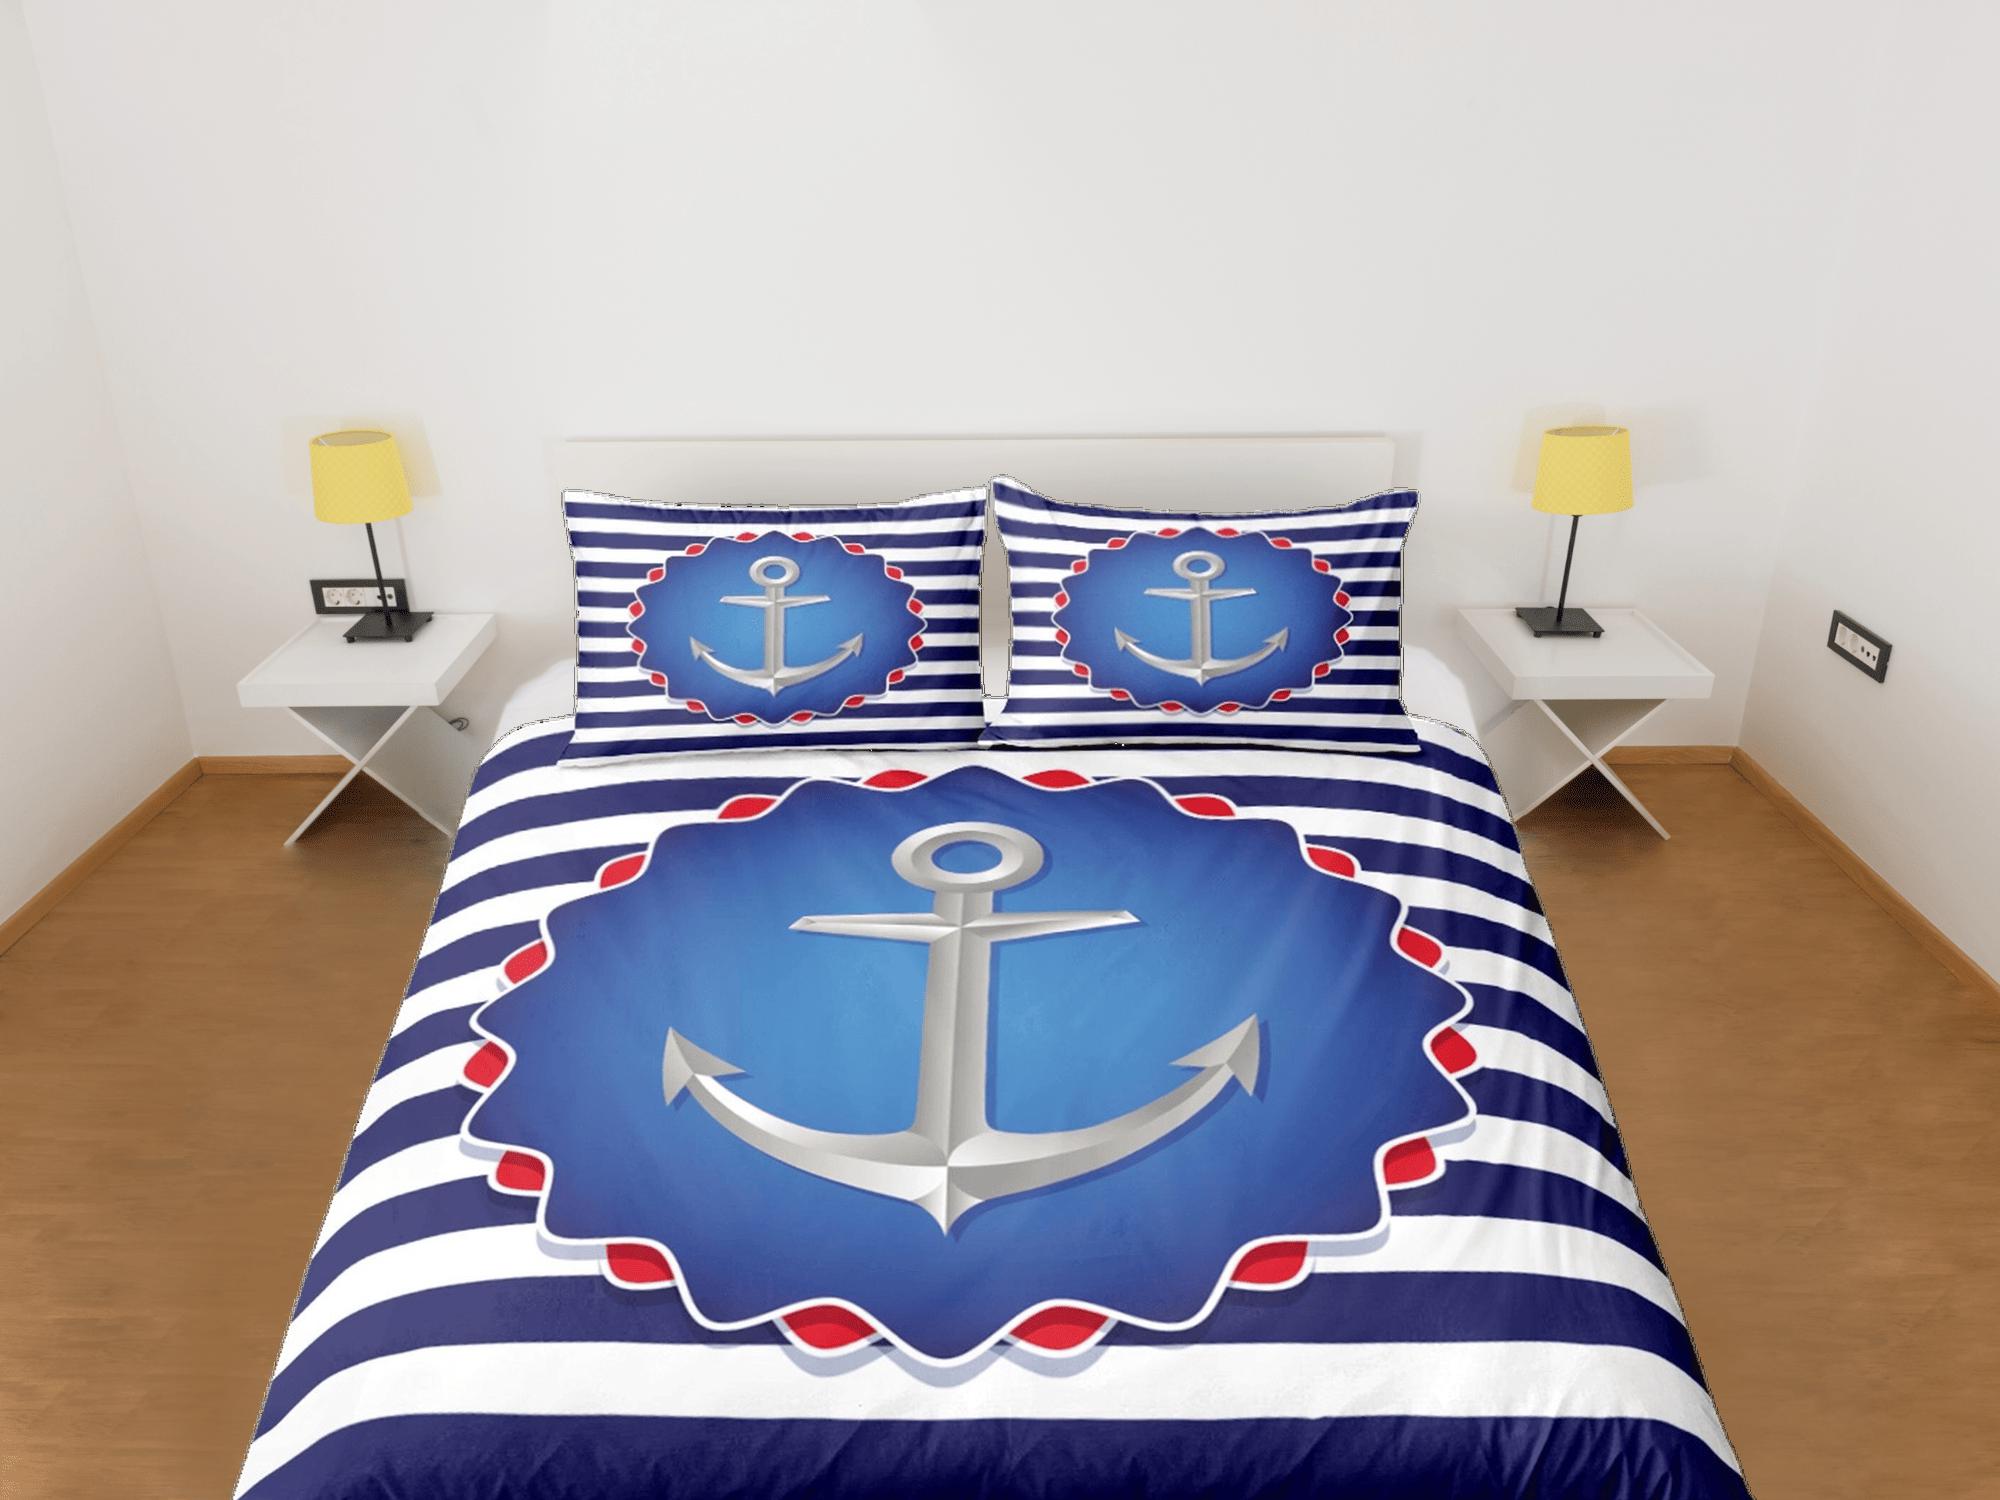 daintyduvet Blue white stripe anchor decor duvet cover coastal grandma nautical bedding set full queen king, aesthetic room decor, seaman gift